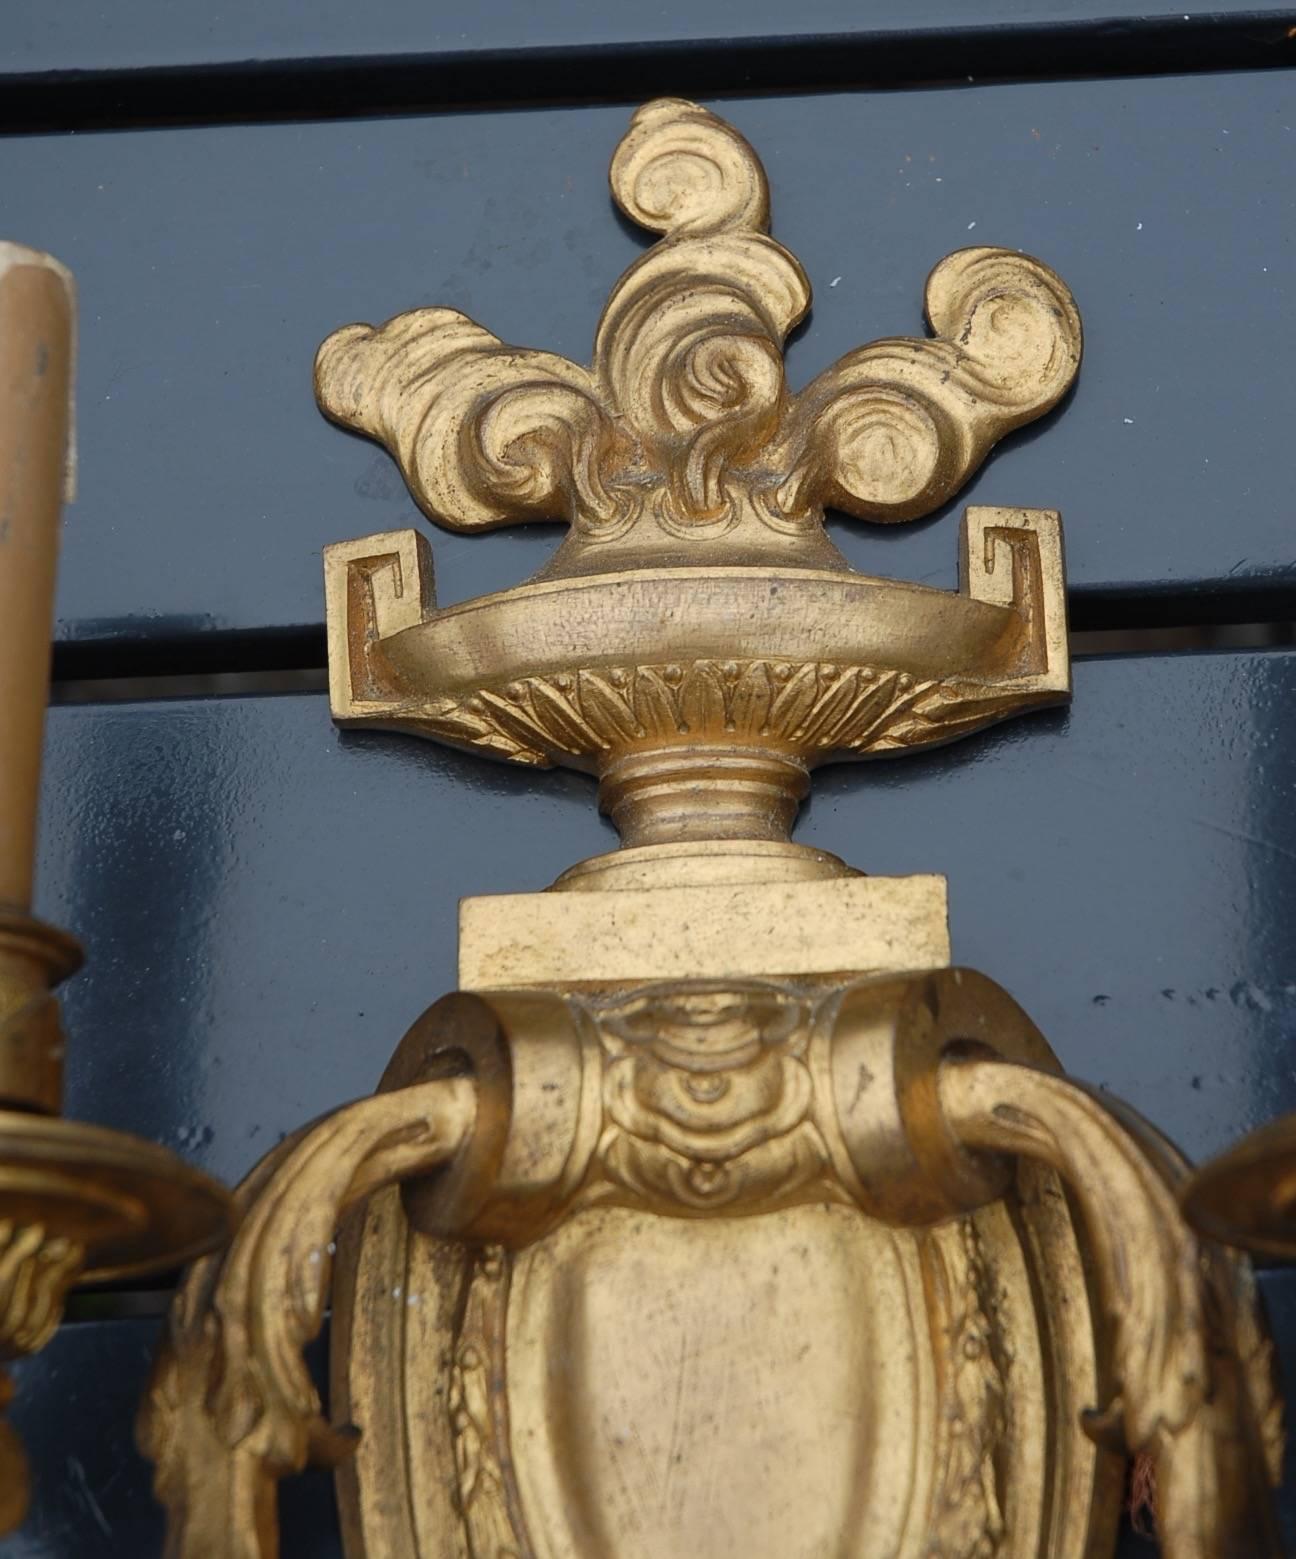 Große antike Wandlampen aus vergoldeter Bronze in bester Qualität.

Dieses atemberaubende Paar eignet sich perfekt als Wandschmuck für den Eingangsbereich Ihres Hauses, aber auch auf beiden Seiten eines Spiegels oder über Ihren Nachttischen würden